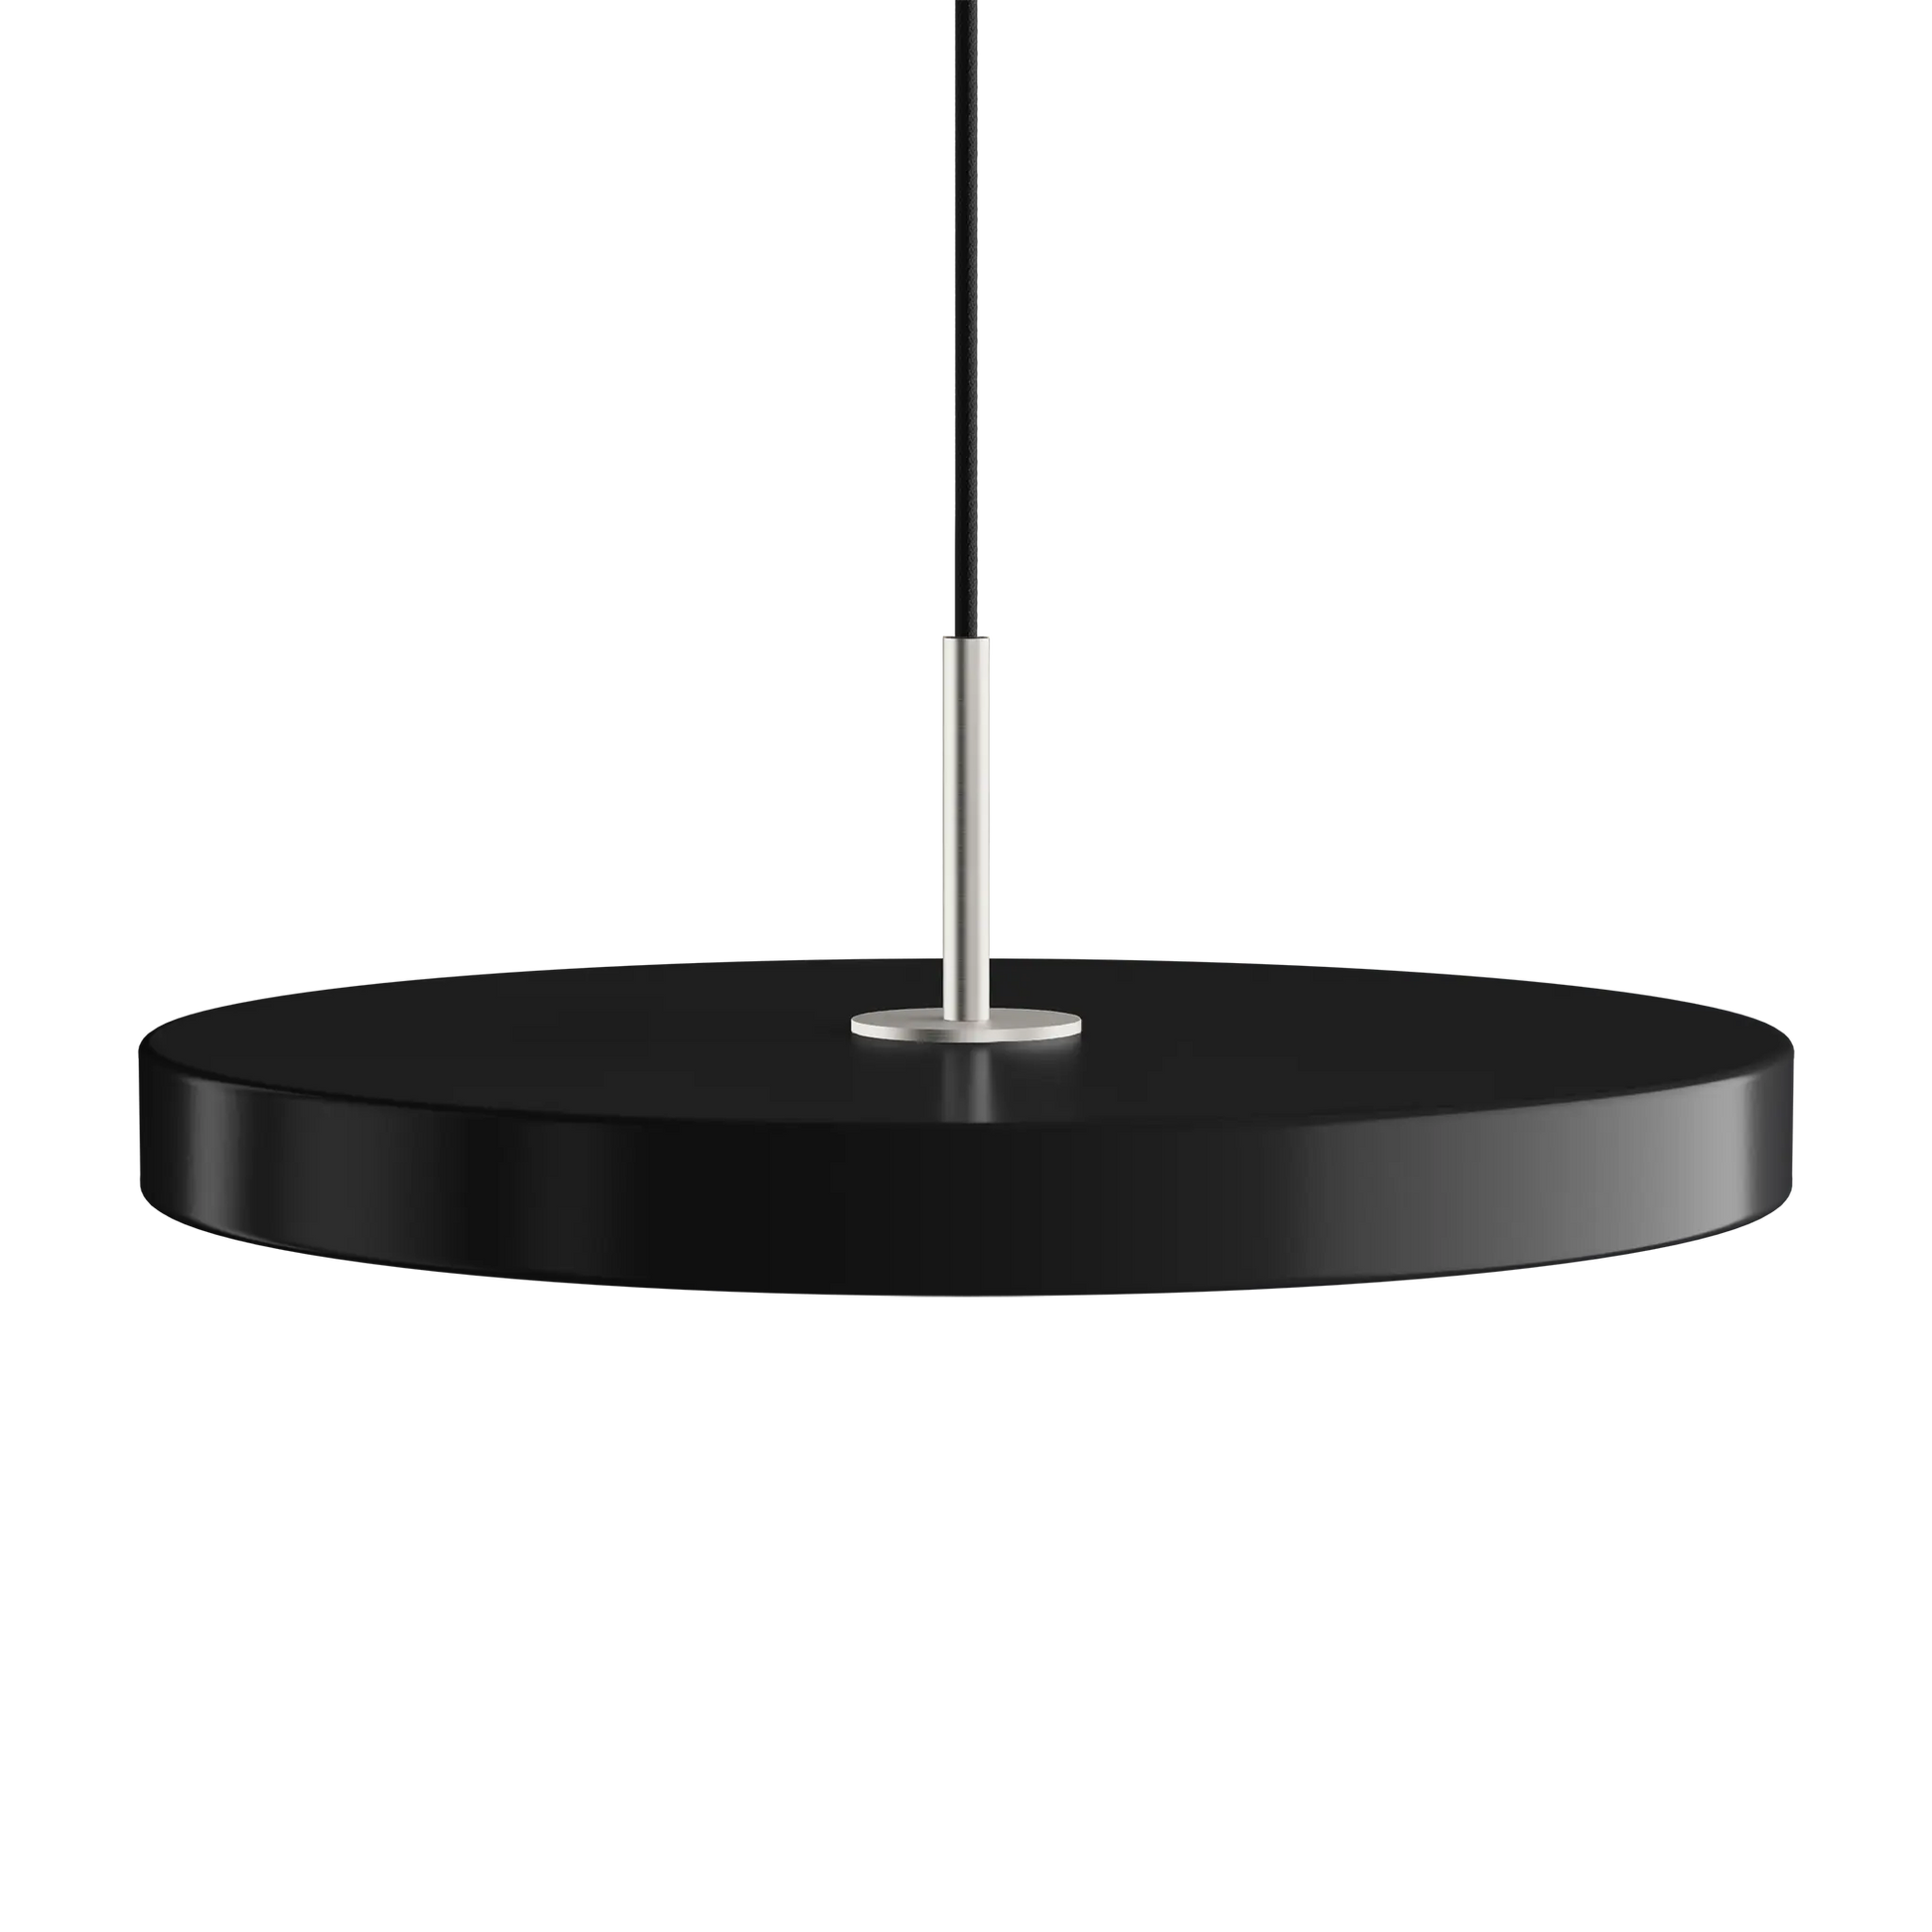 Asteria Medium taklampa med ståltop i svart färg från Umage